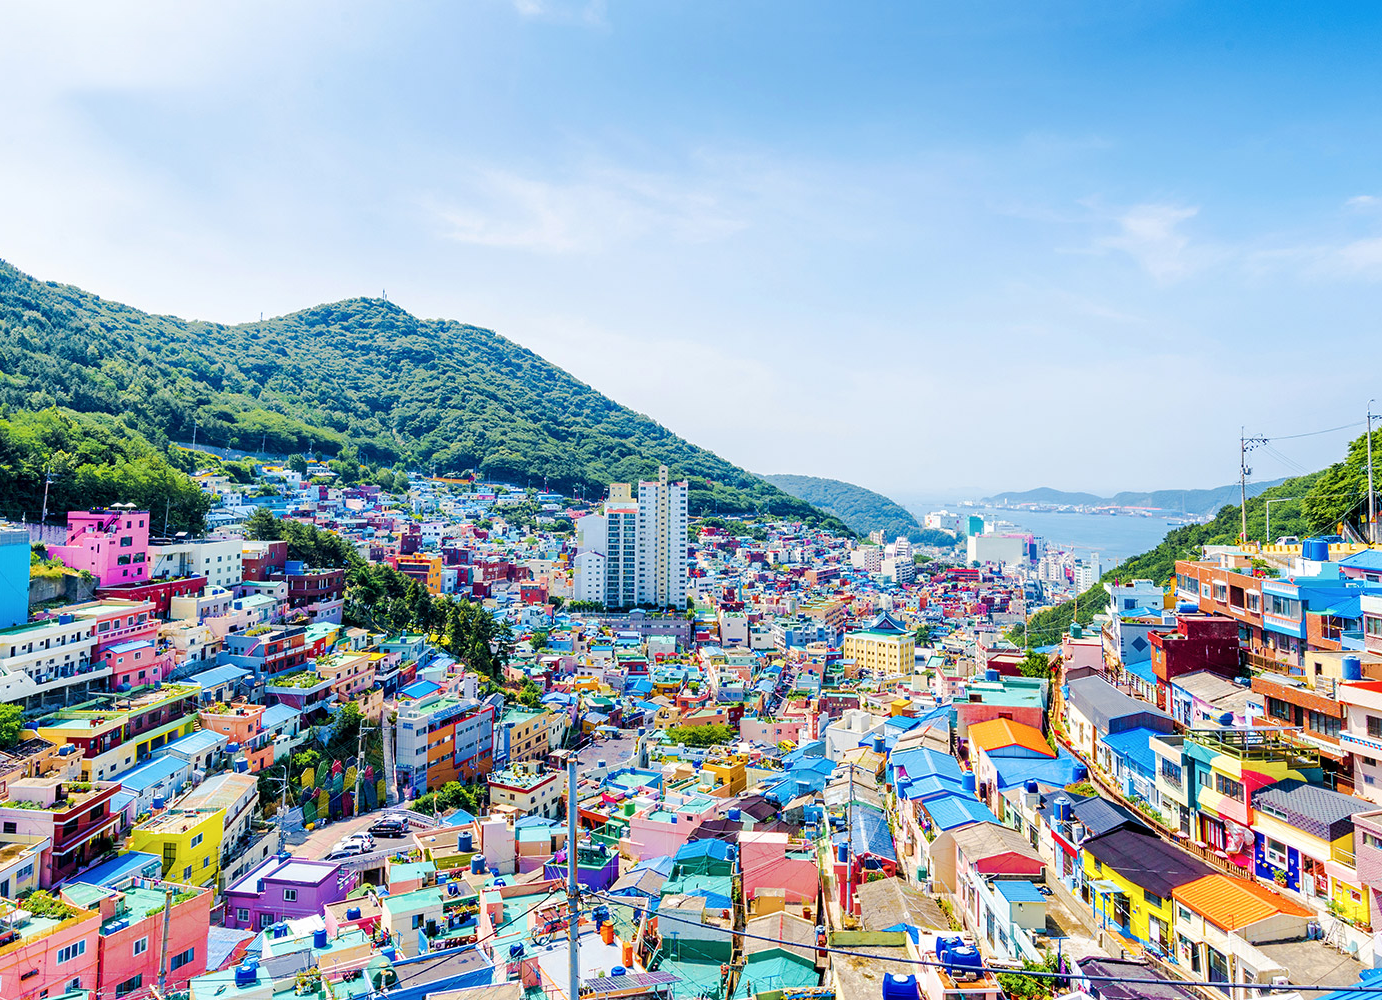 Du lịch Hàn Quốc mùa Thu - Daegu - Gyeongju - Busan từ Hà Nội giá tốt